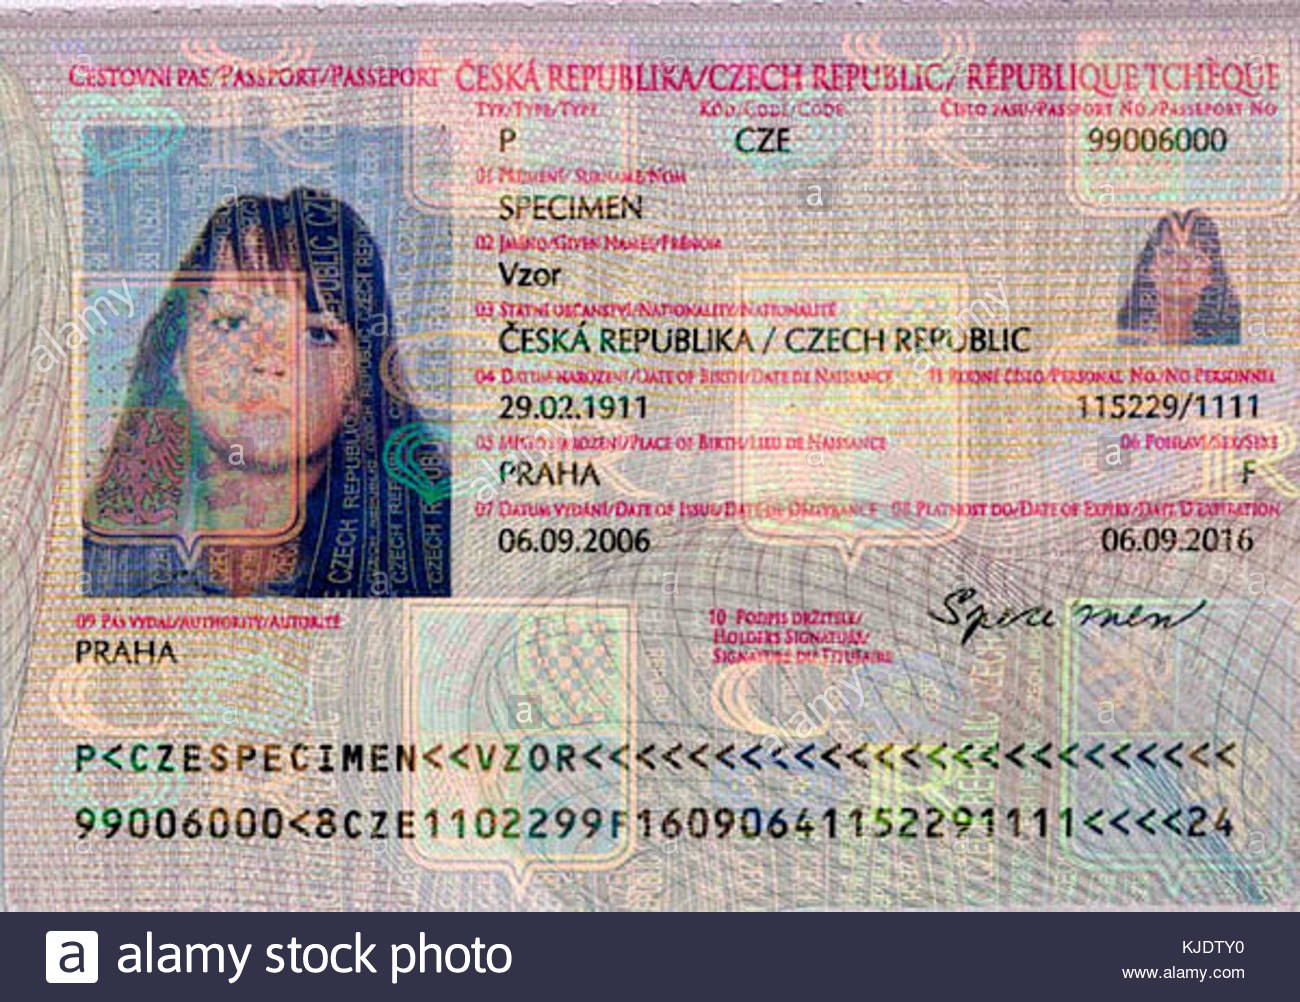 Czech_passport_2005_MRZ_orient1_1300x1002.jpg